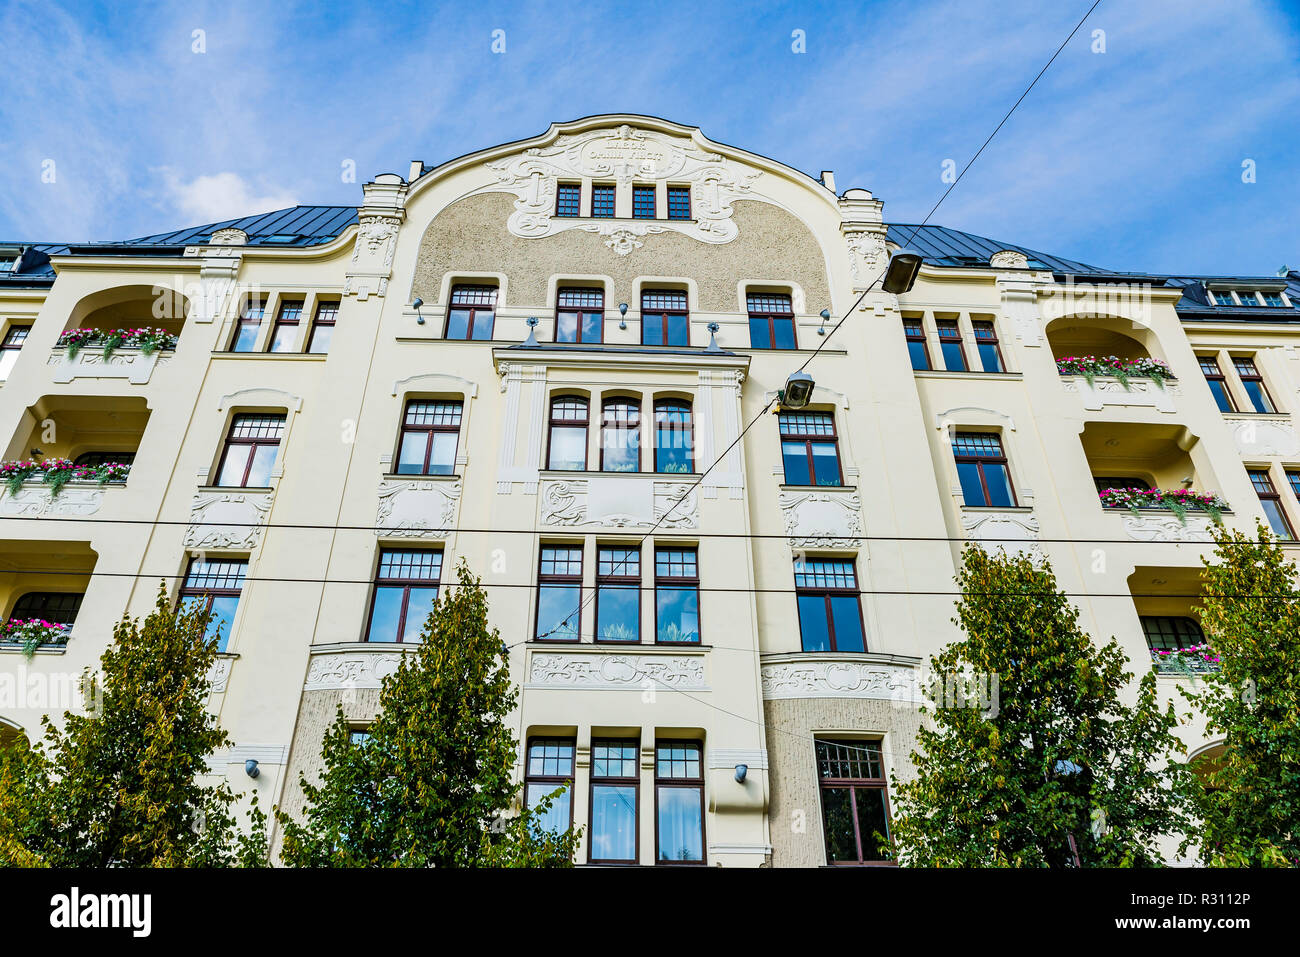 L'architecture Art Nouveau de Riga - Elizabetes iela 23 - Construit en 1903 par l'architecte Herman Hilbig. ABLV siège de la Banque mondiale. Riga, Lettonie, Pays Baltes, Banque D'Images